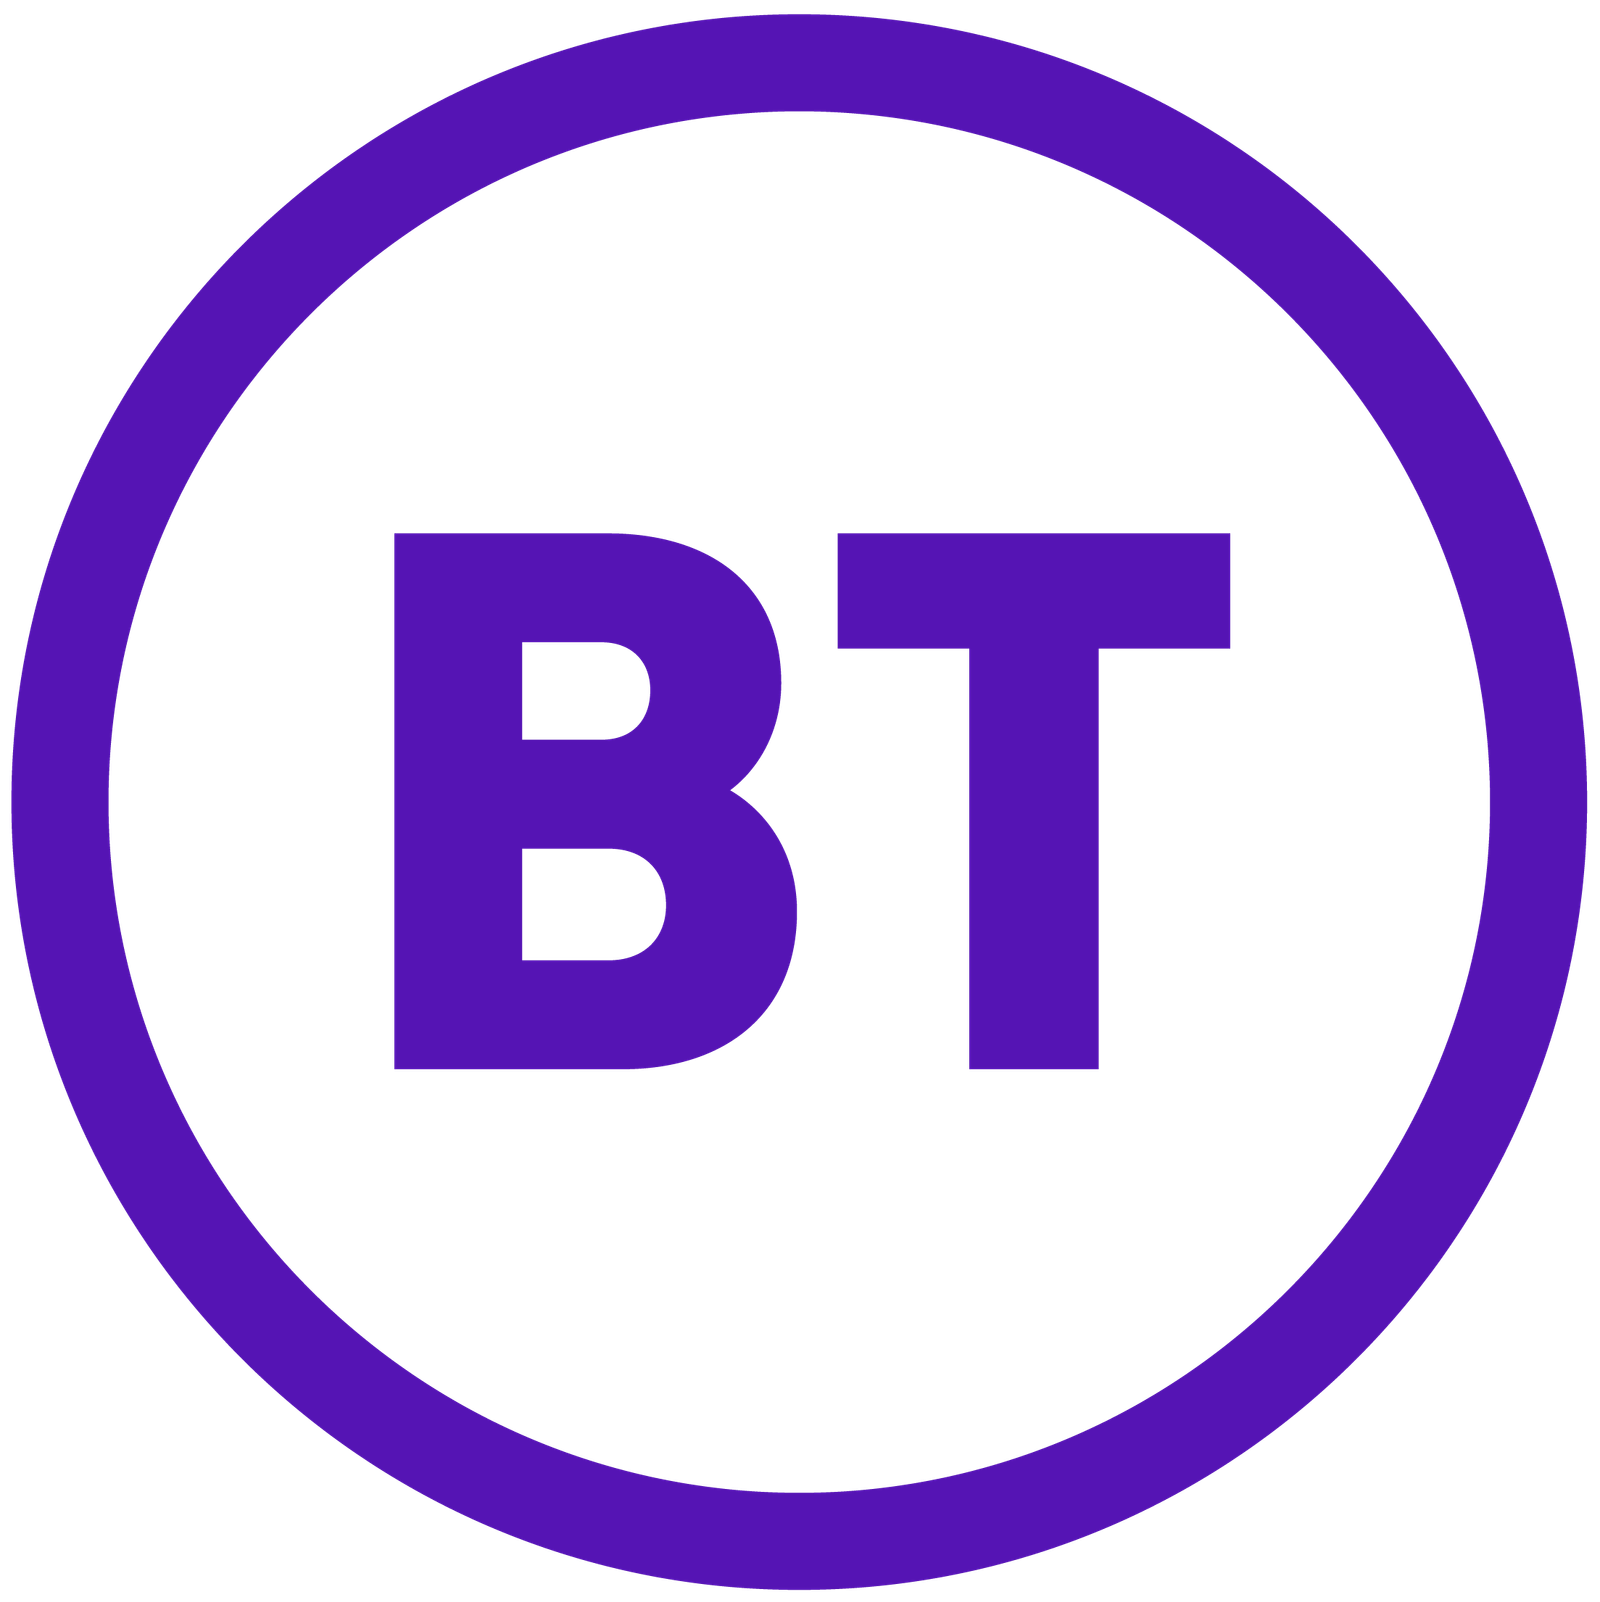 BT_logo_2019